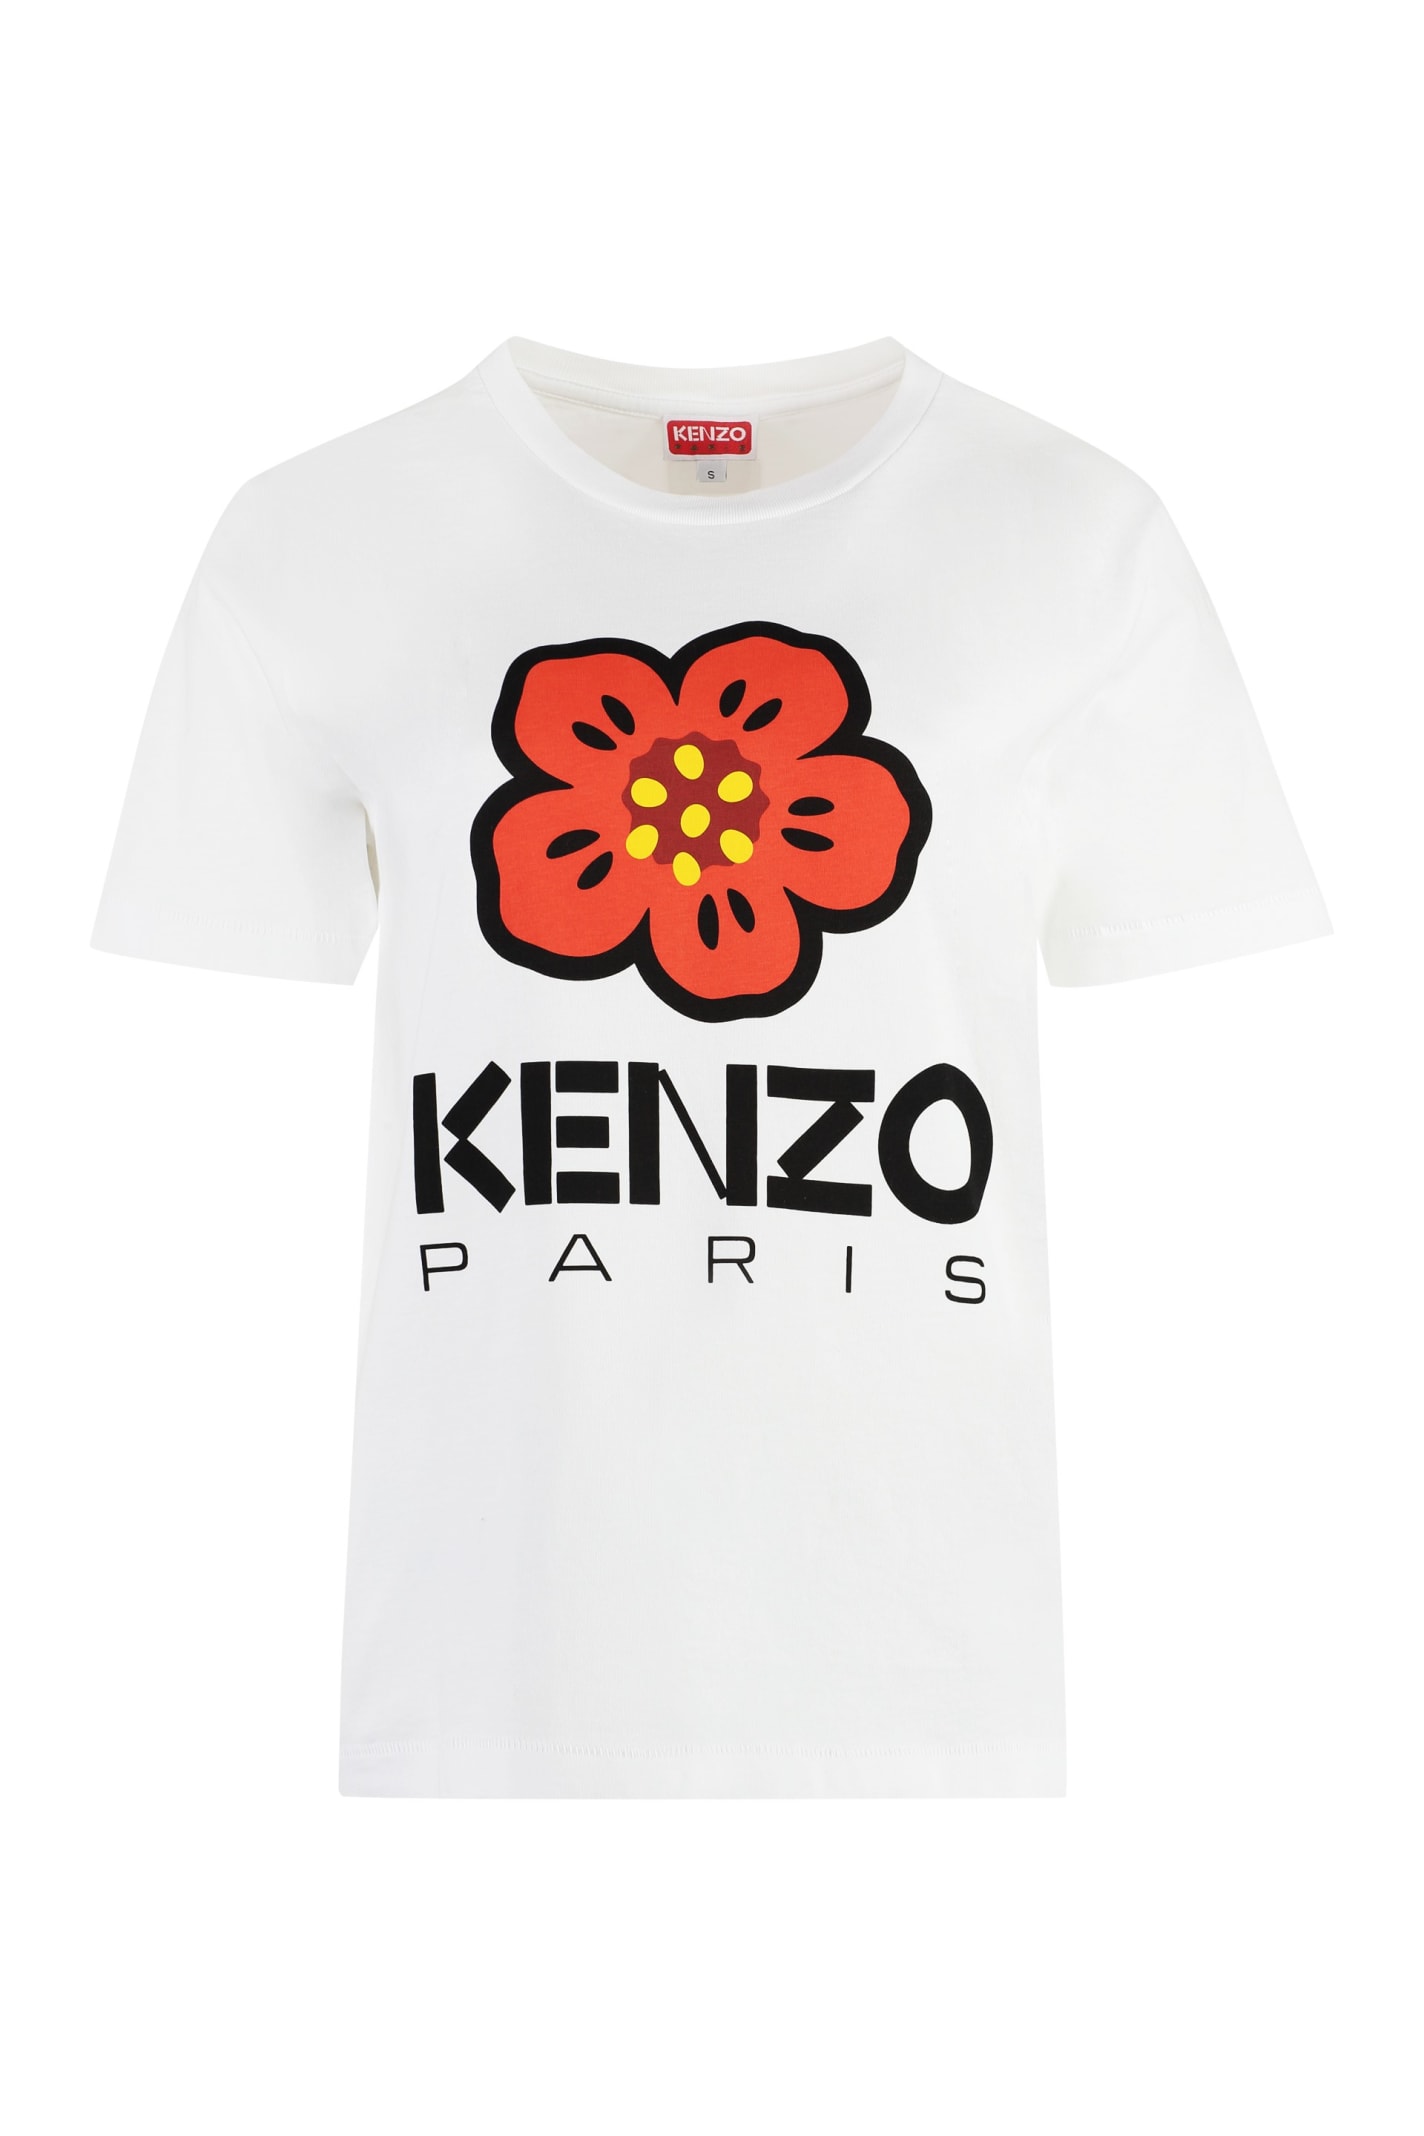 Kenzo Cotton Crew-neck T-shirt In White